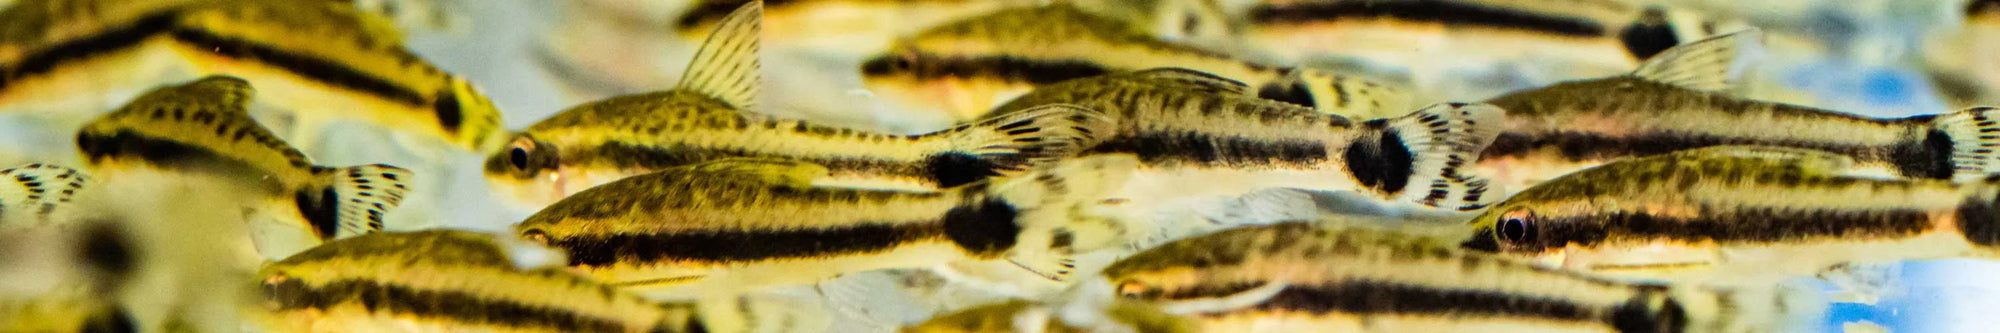 All Pet Nano Fish At Flip Aquatics